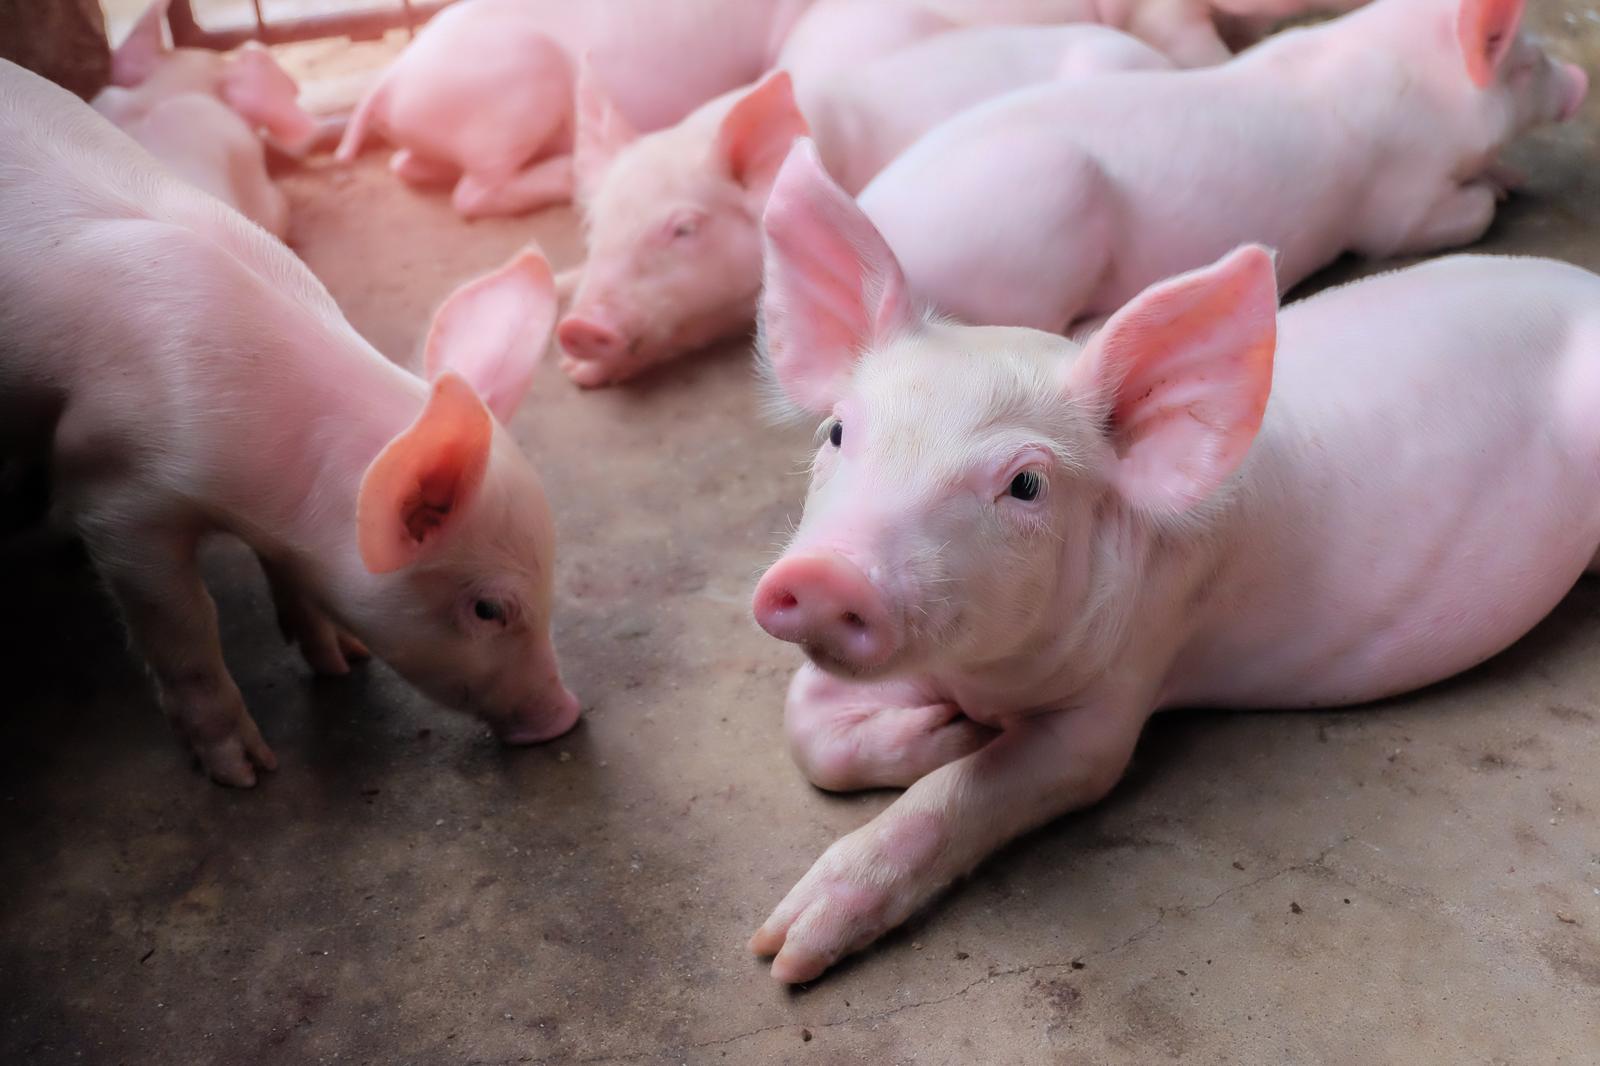 RAIKKÜLA SEAKASVATUS OÜ - poultry production, farm animals, Pig farming